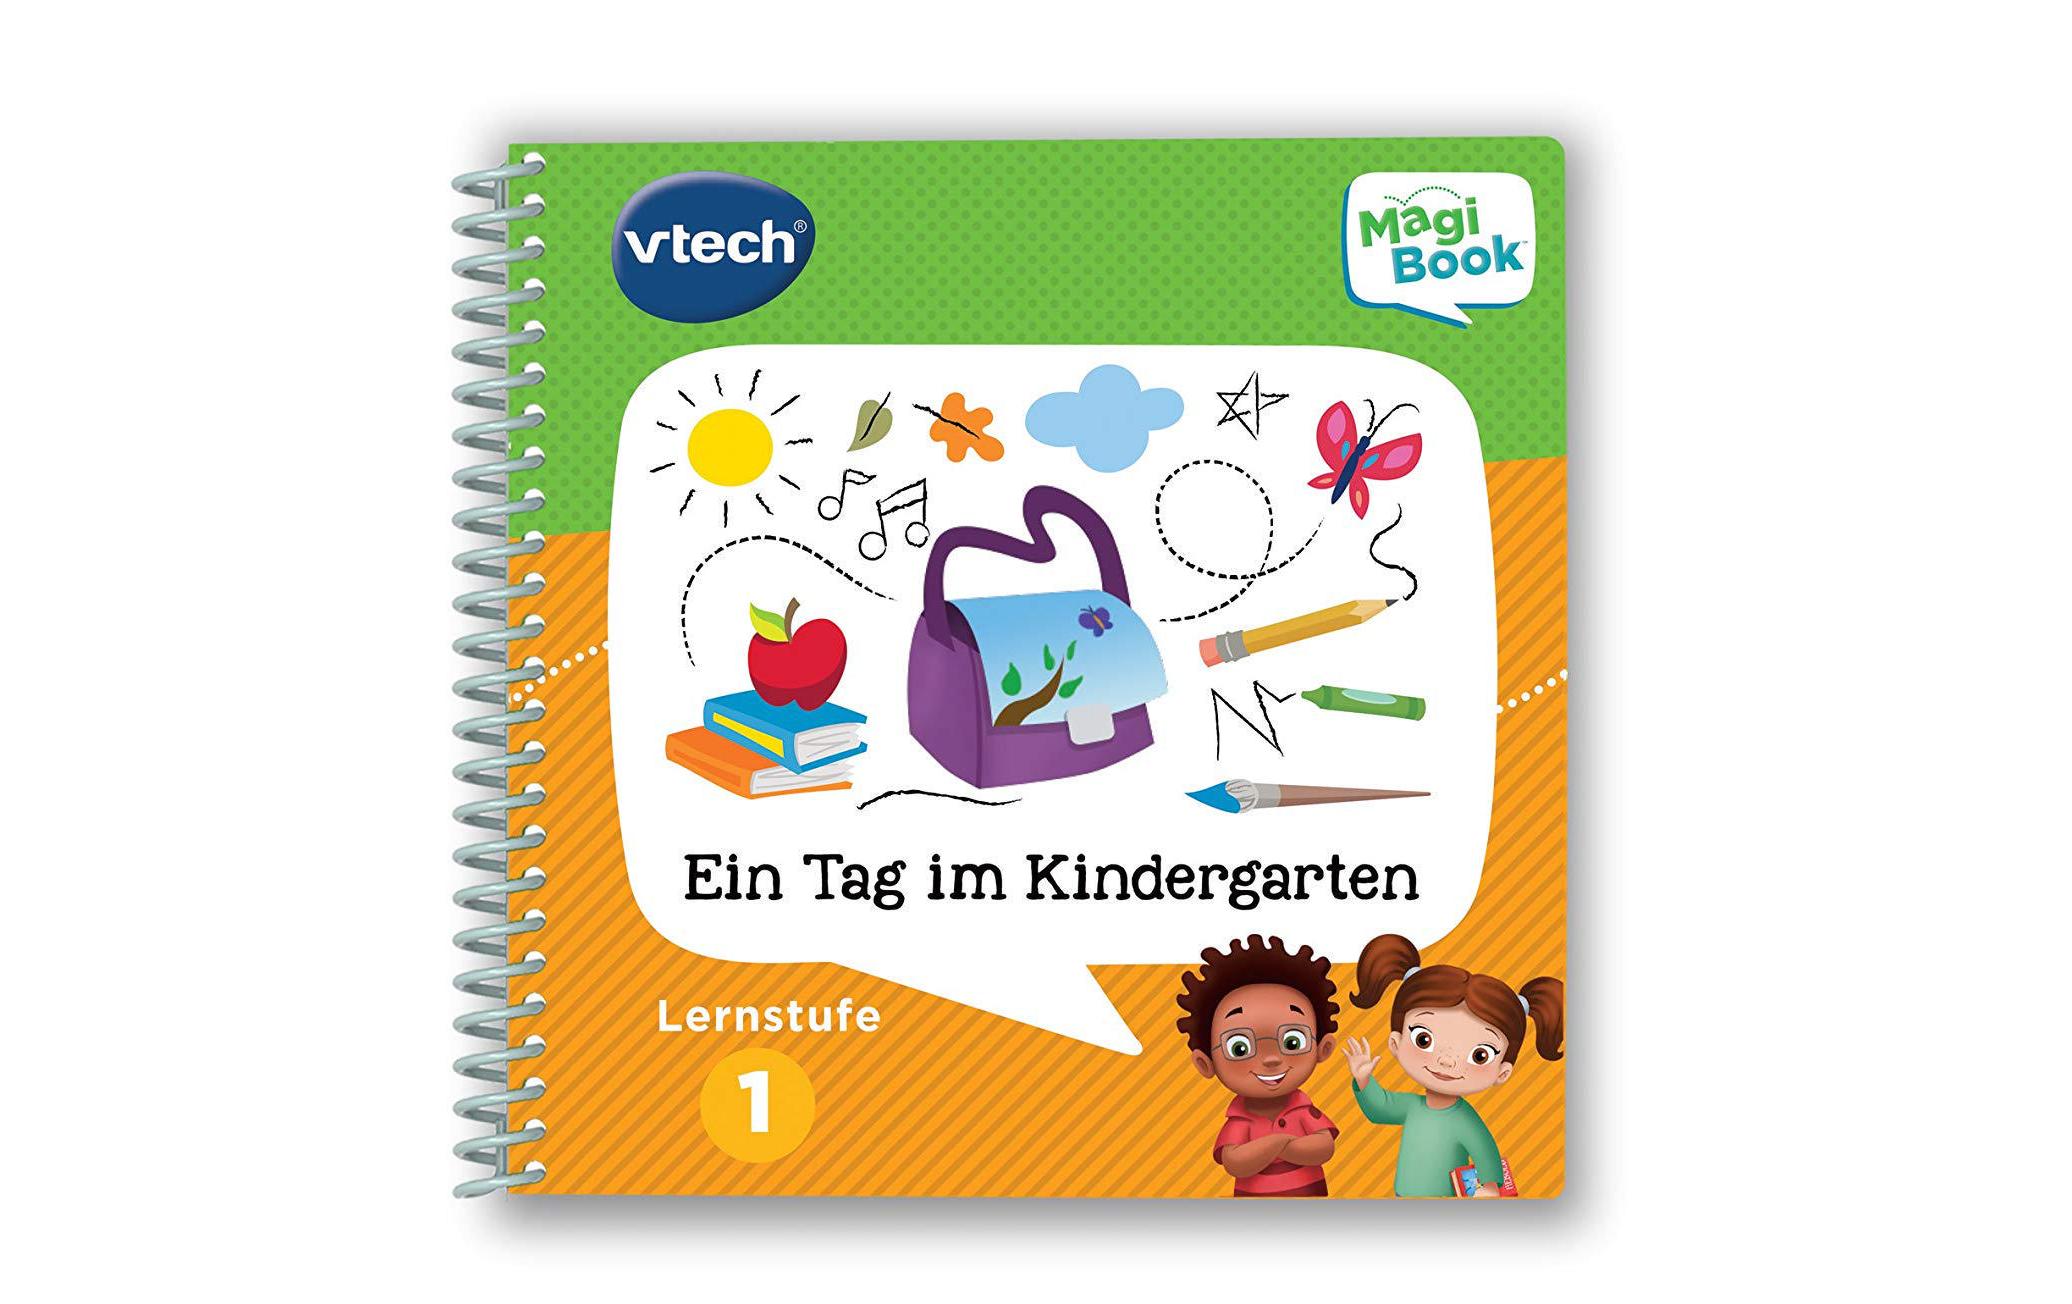 Vtech Lernbuch MagiBook Lernstufe 1 - Ein Tag im Kindergarten